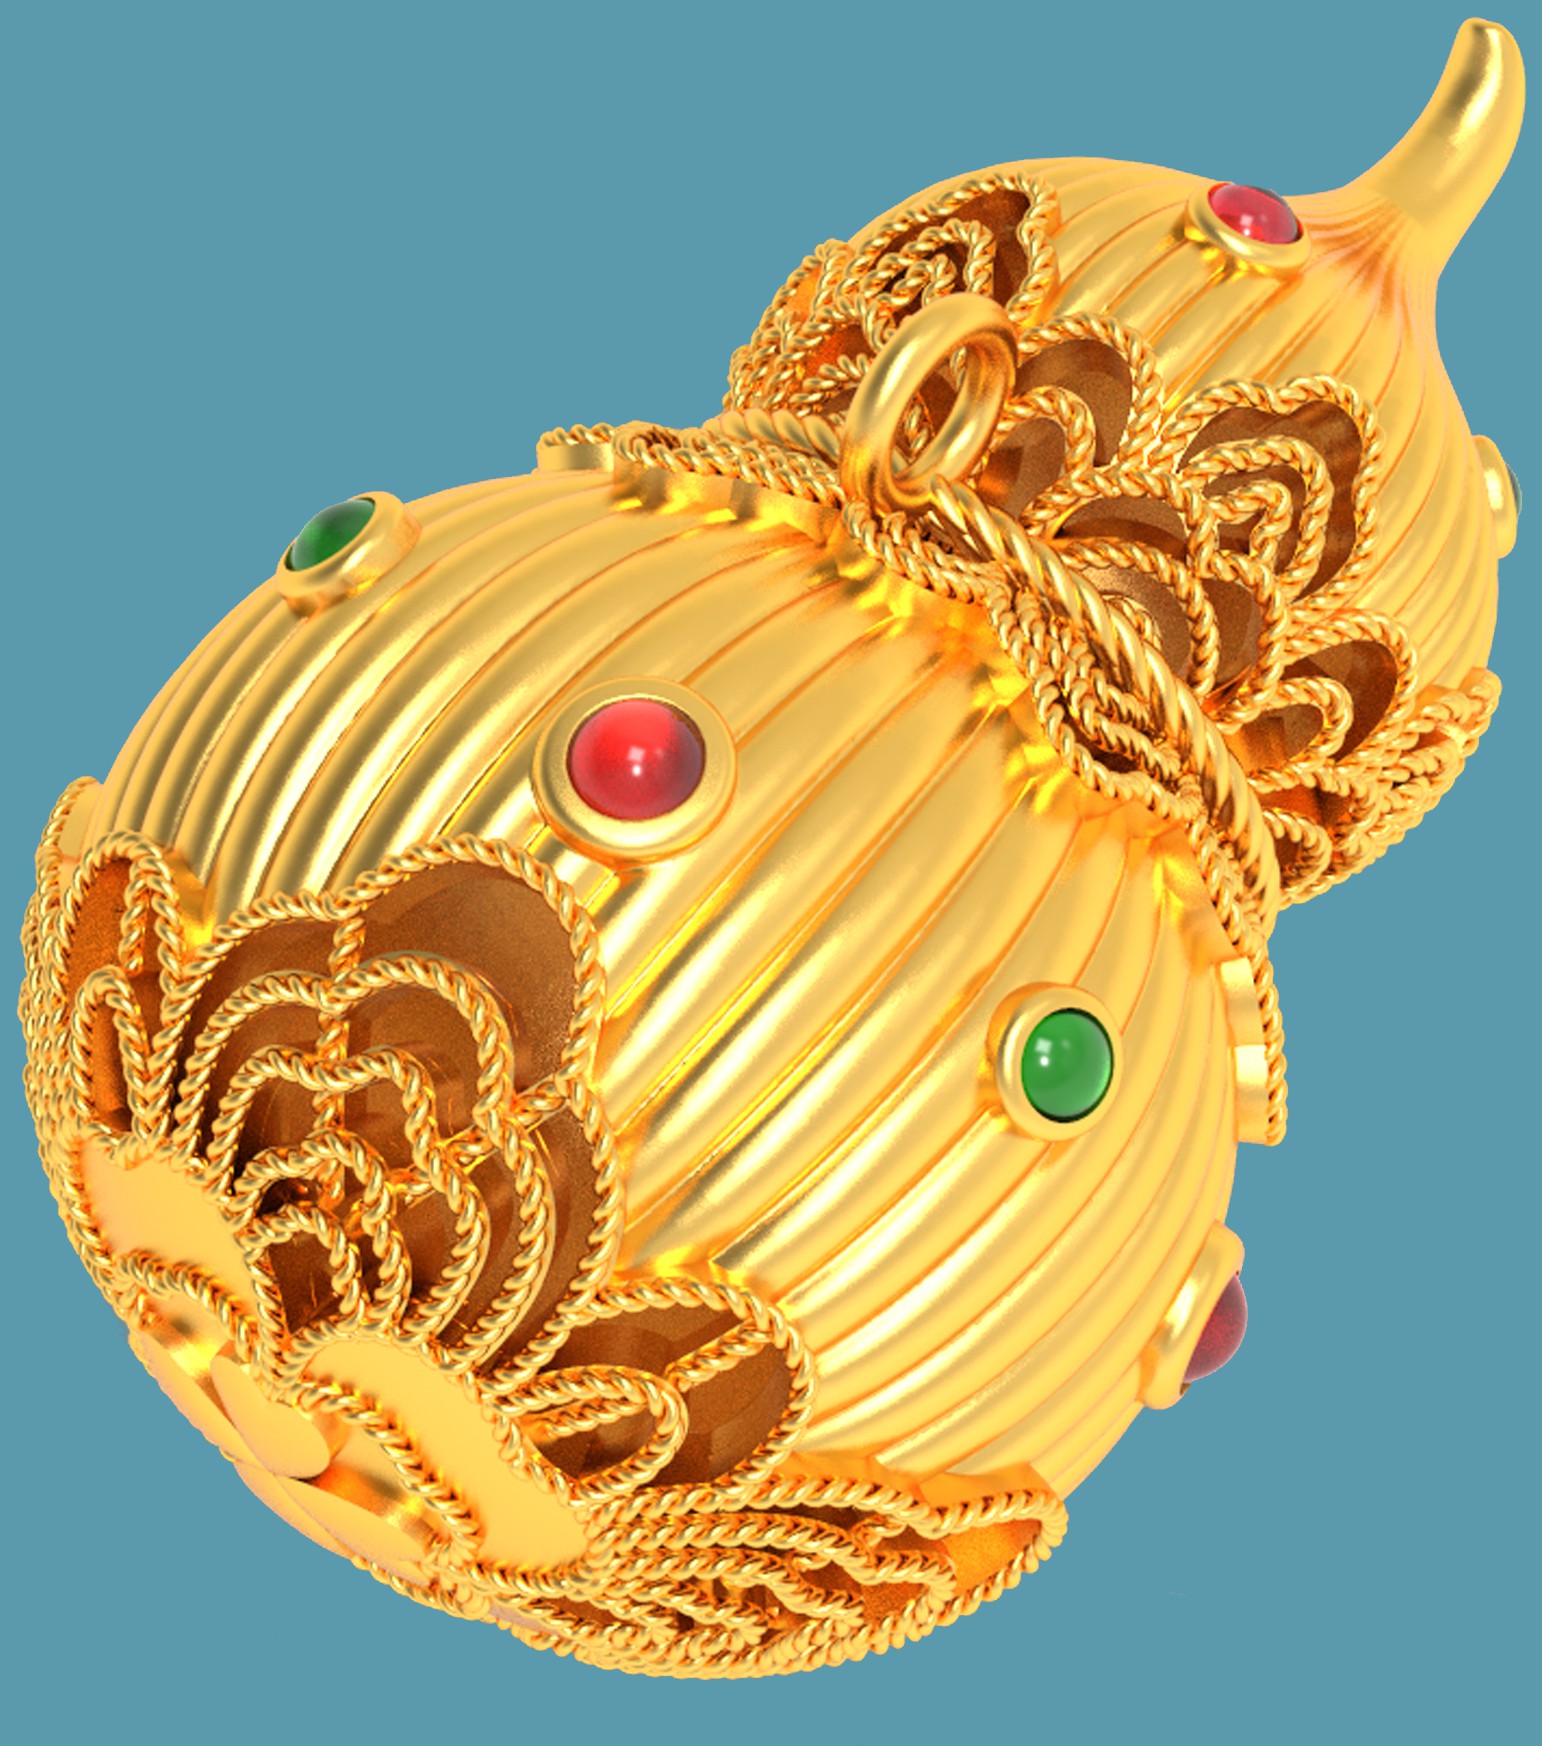 金葫芦logo图片